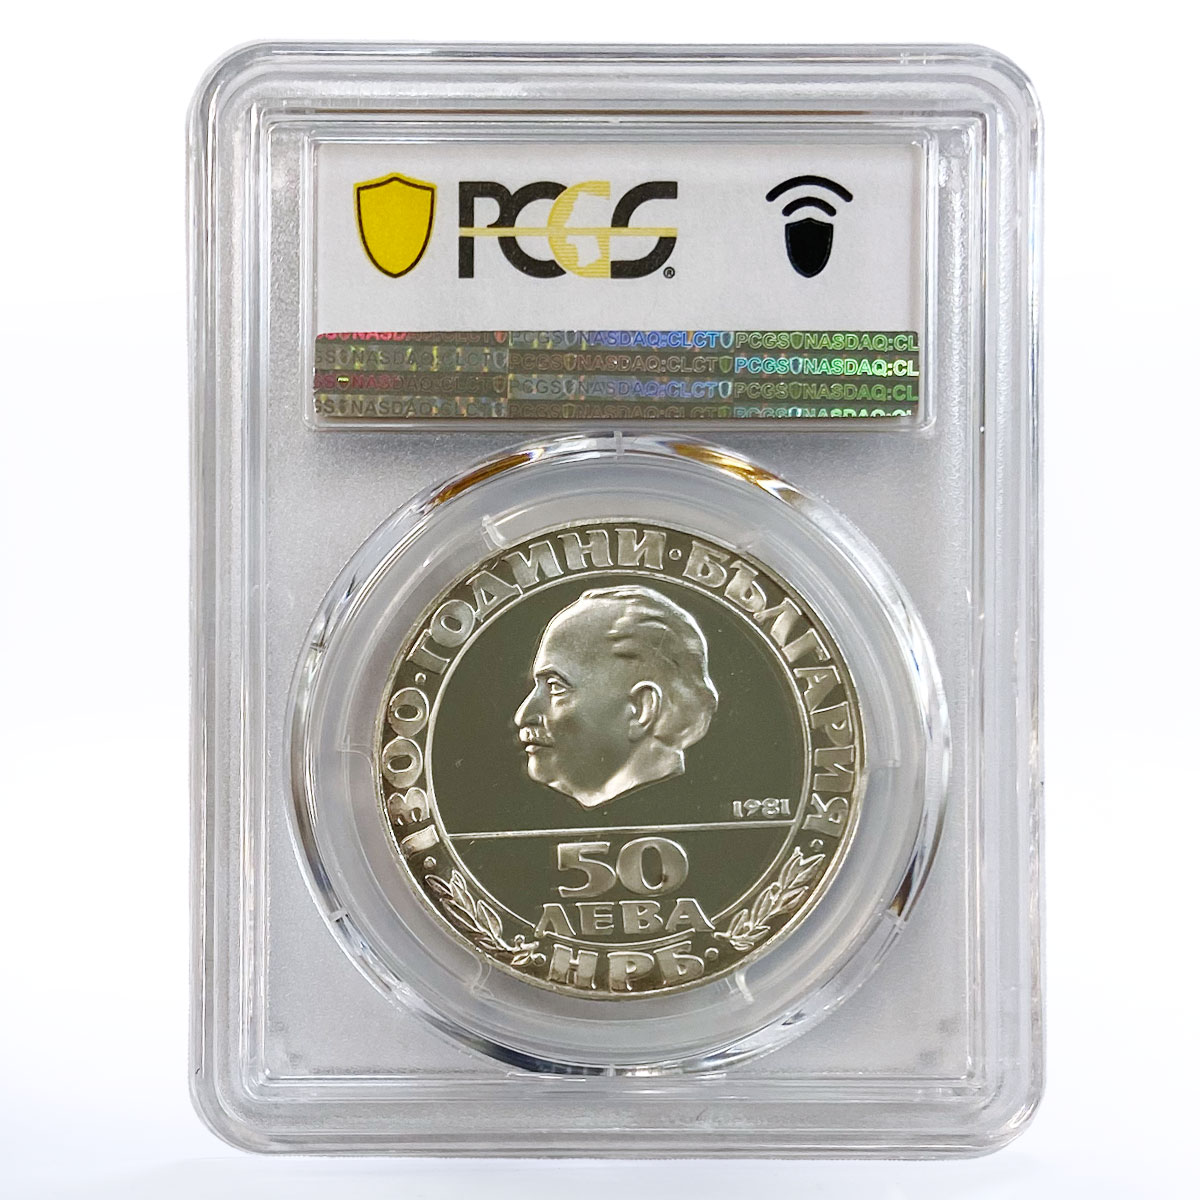 Bulgaria 50 leva 1300th Anniversary of Republic PR68 PCGS silver coin 1981